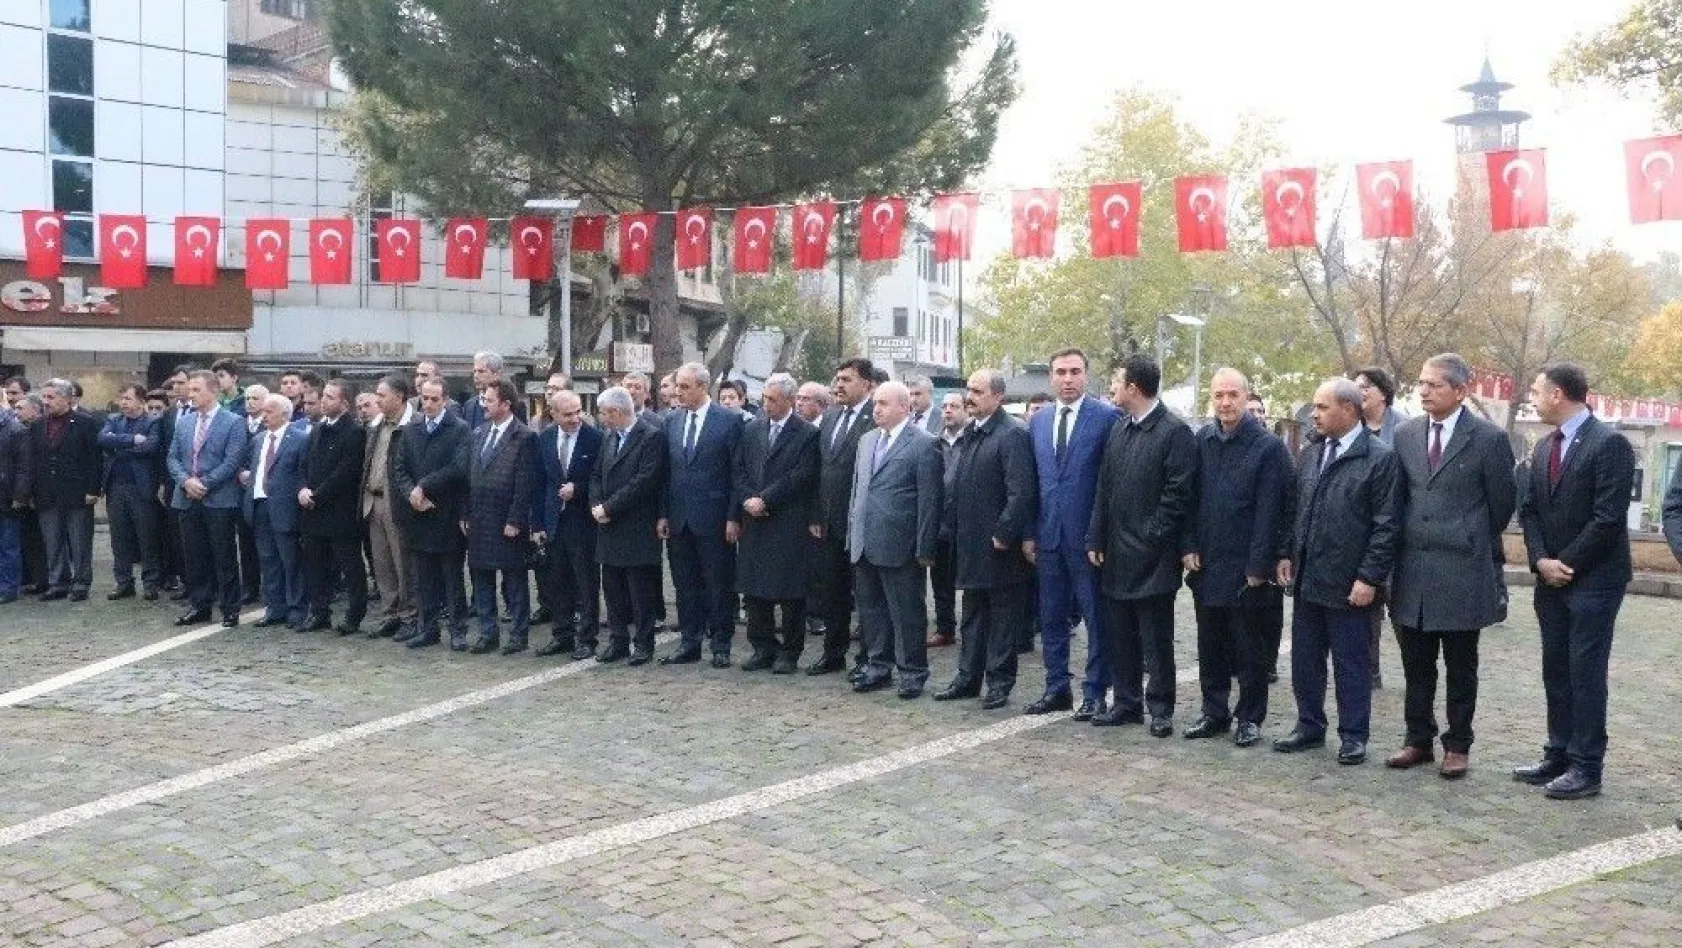 Kahramanmaraş'ta 24 Kasım öğretmenler günü kutlamaları
